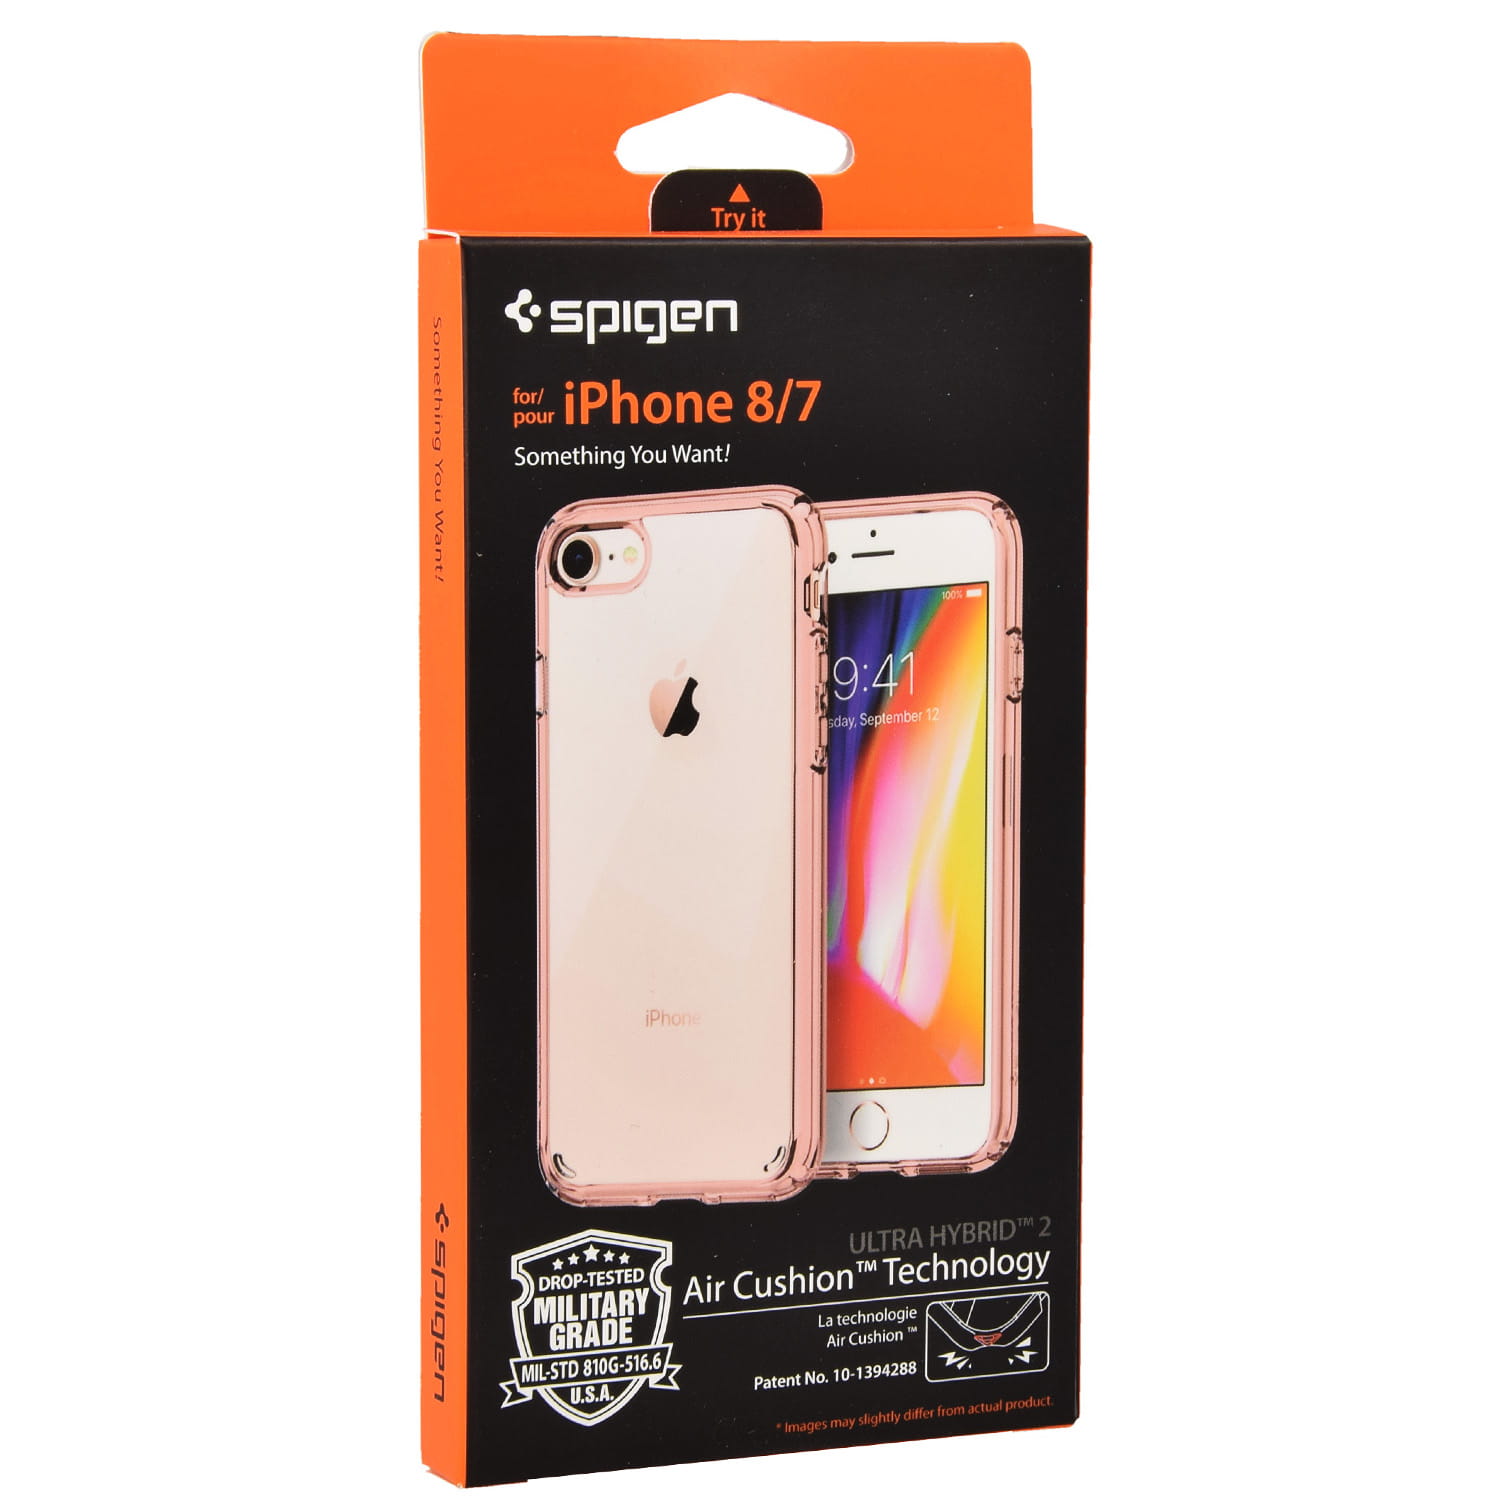 Originale Hülle Ultra Hybrid von Spigen für iPhone SE 2020, 8/7, rosa.